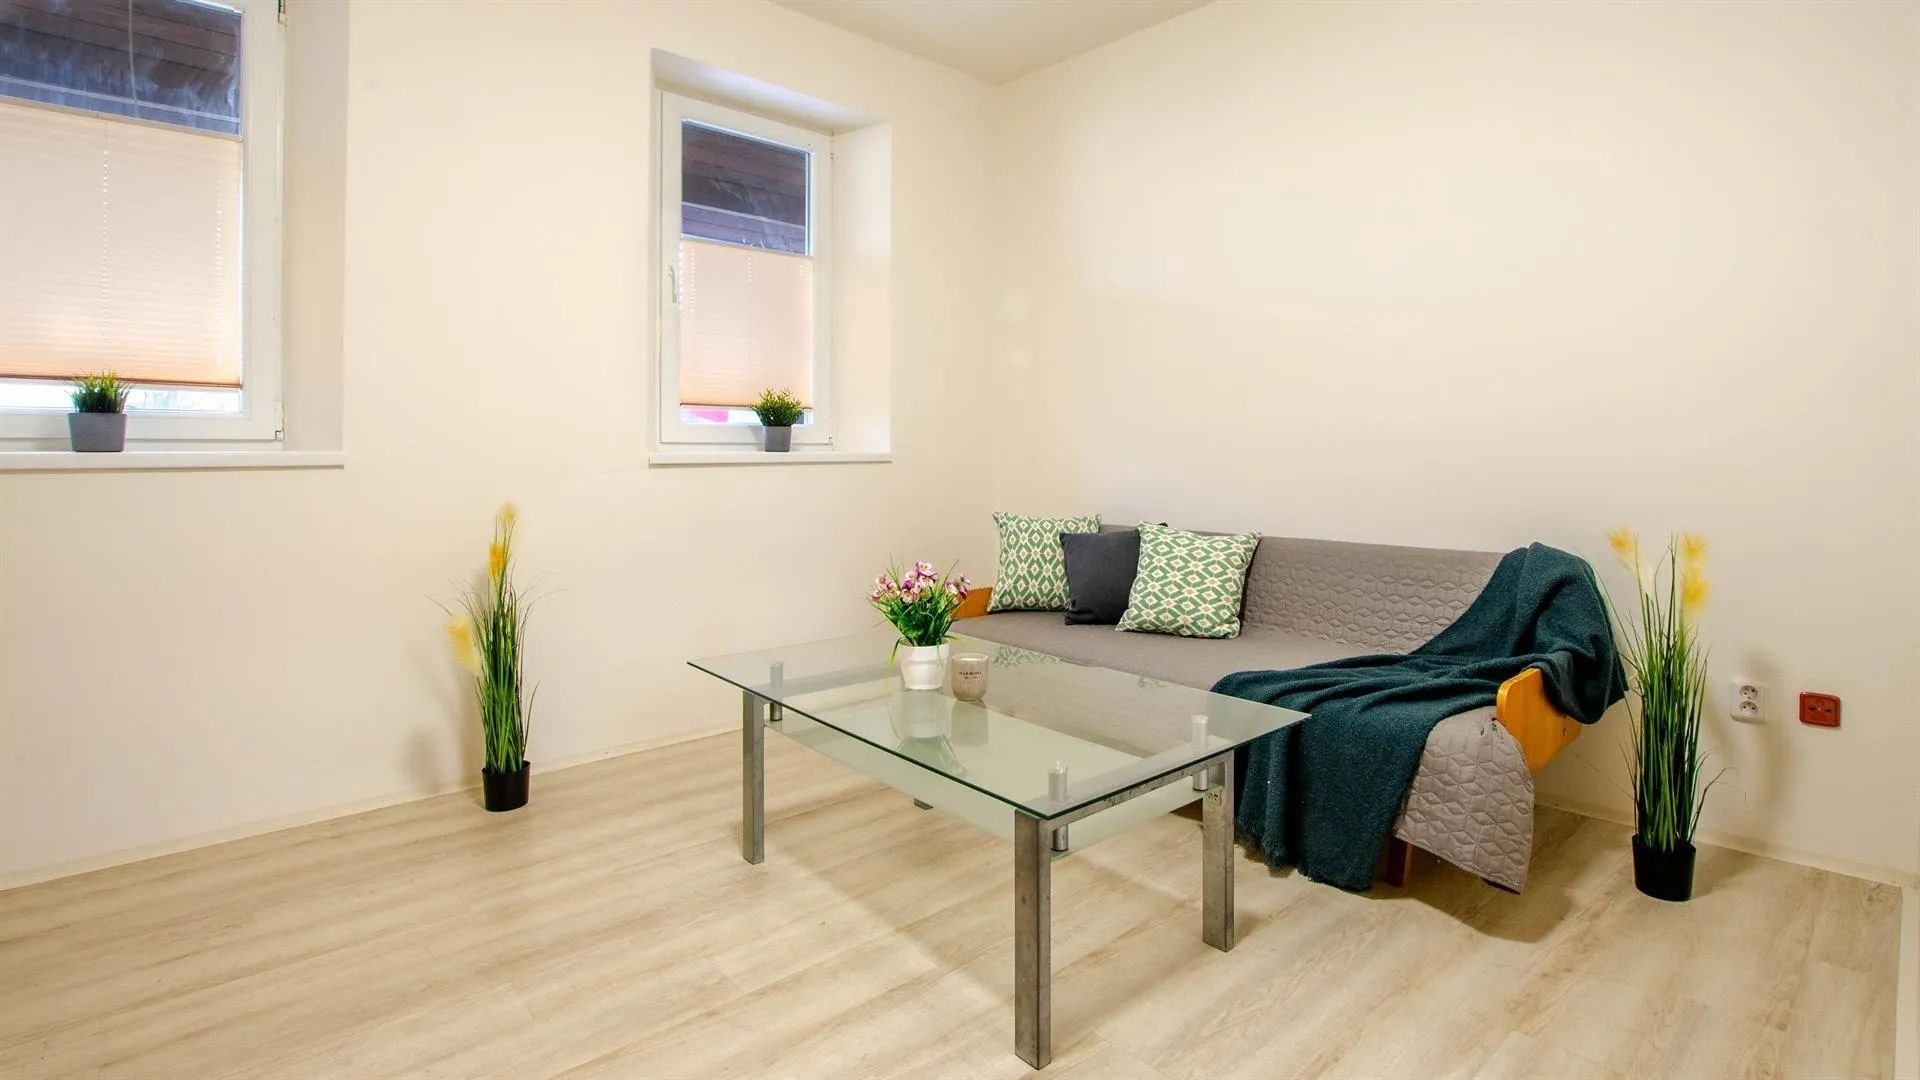 obývací pokoj s přirozené světlo a dřevěná podlaha